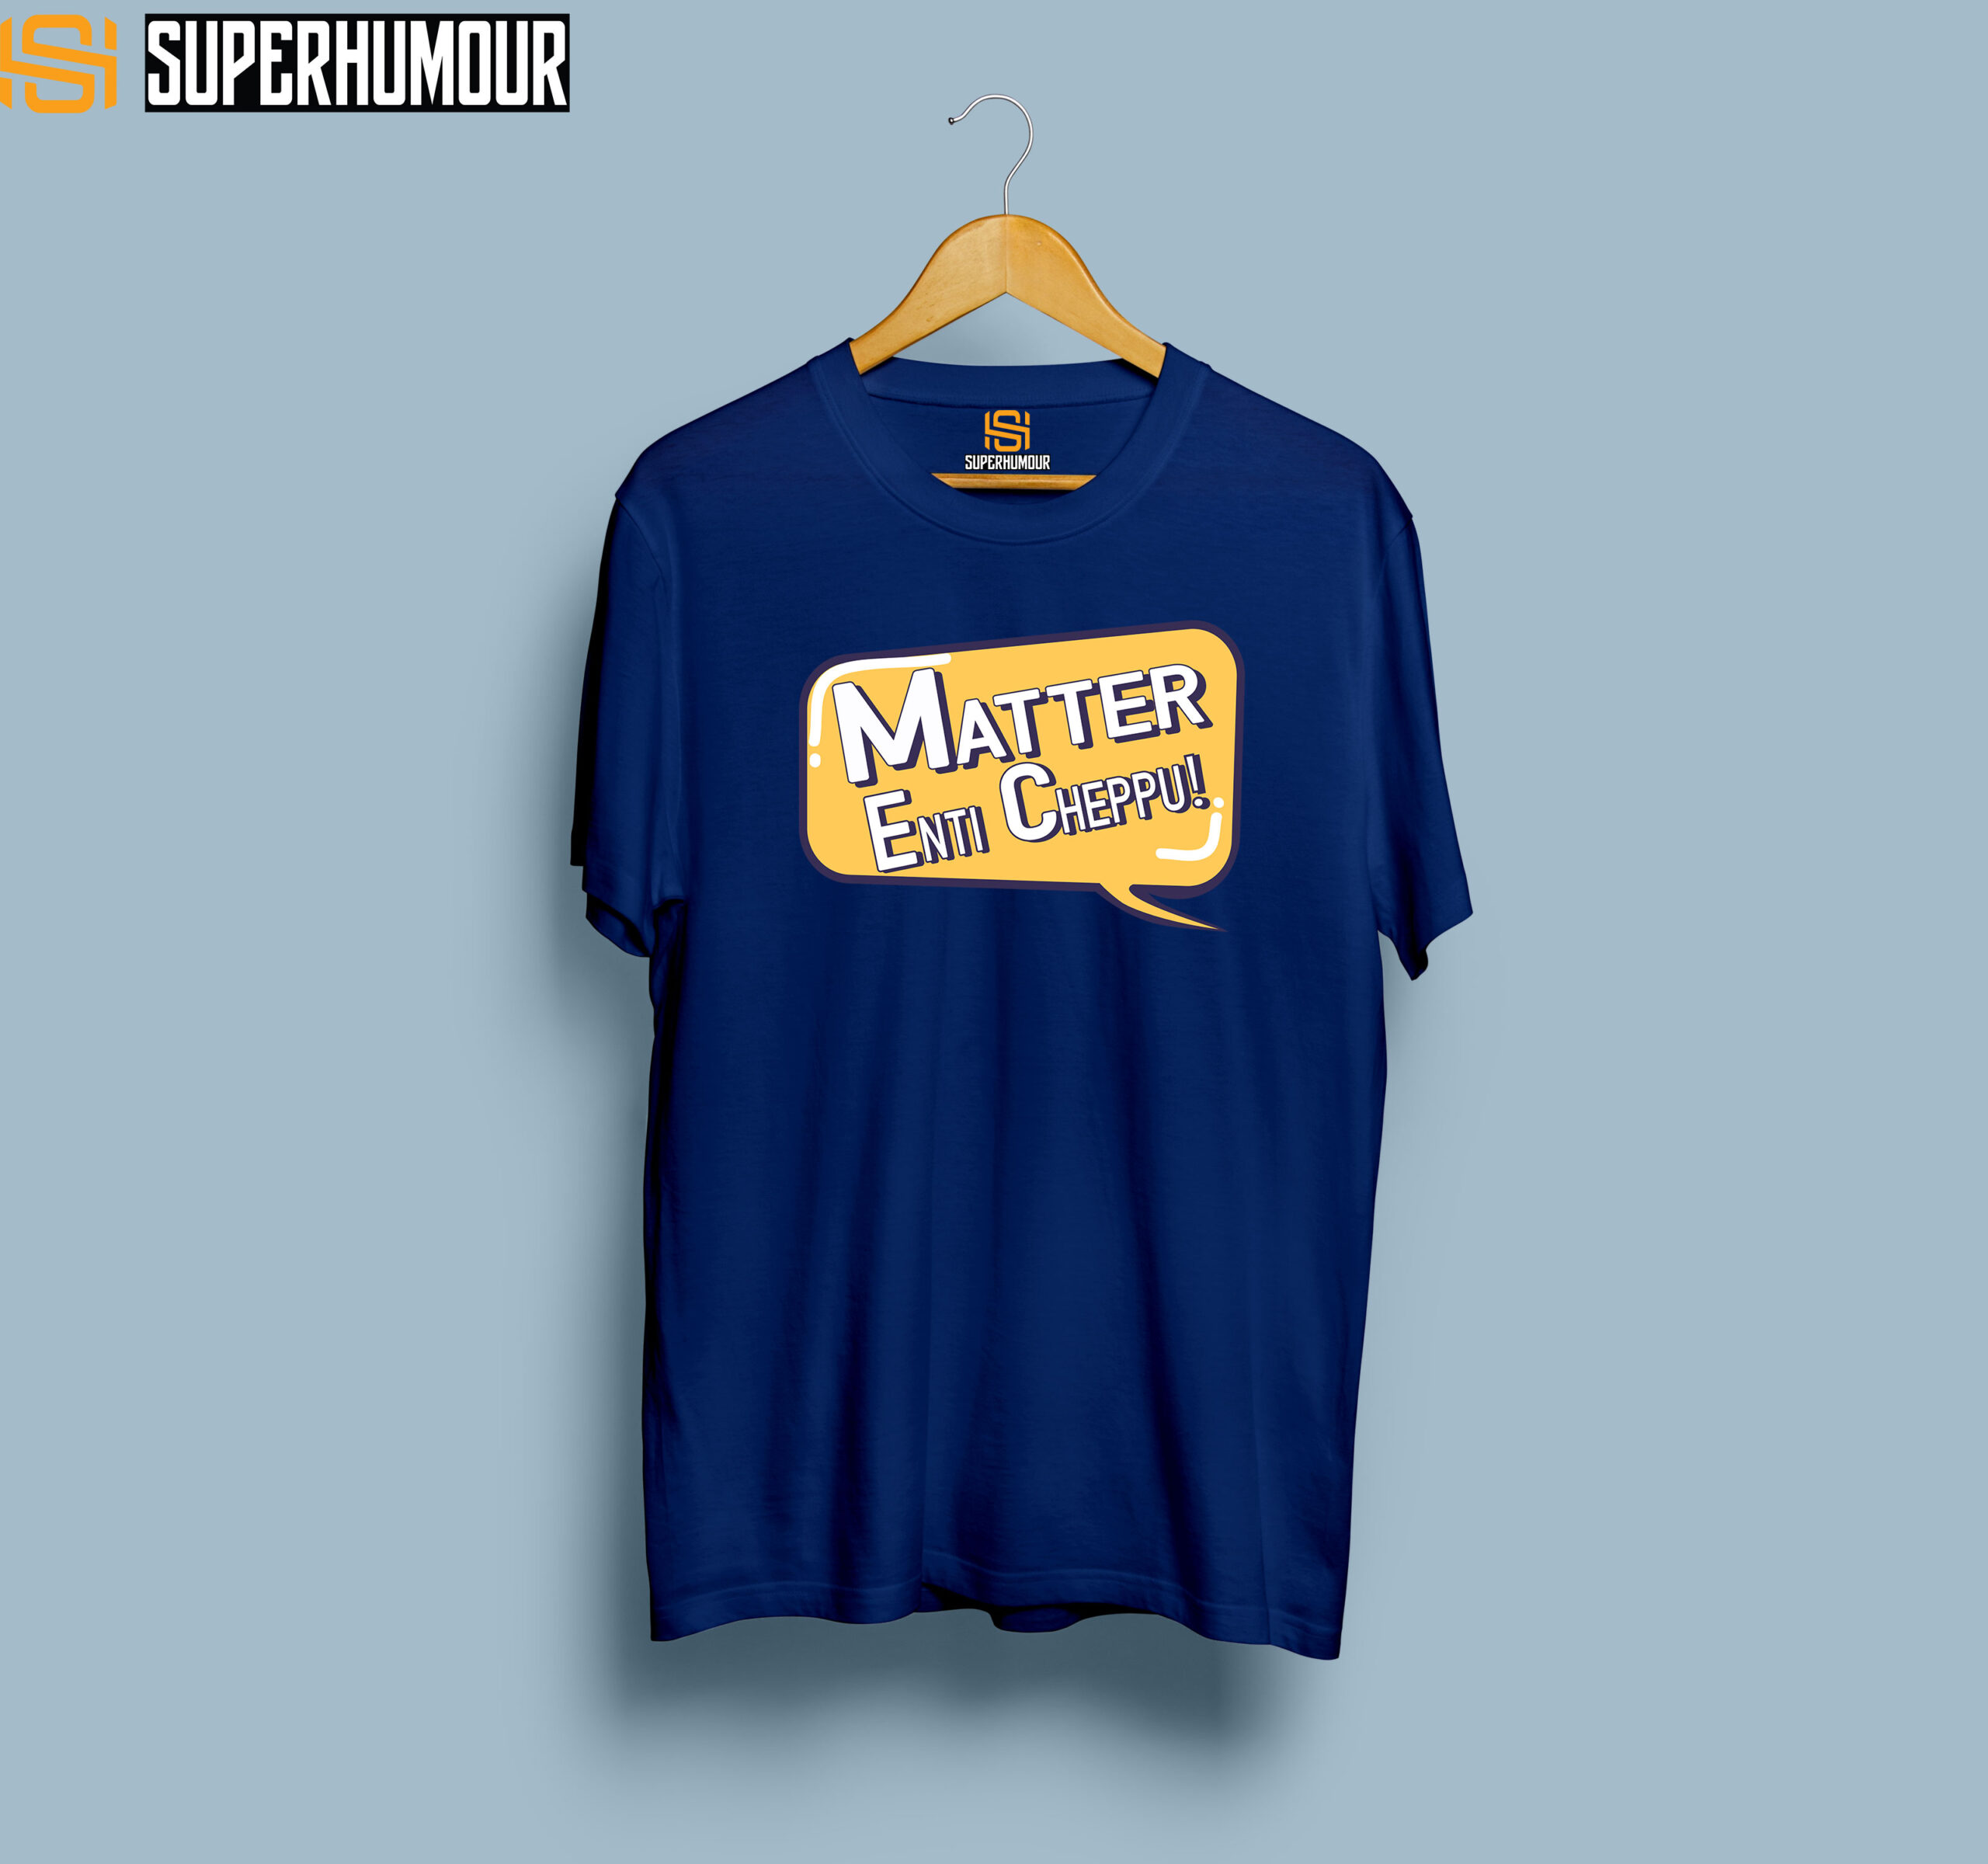 Matter Enti Cheppu - Men's T-shirt